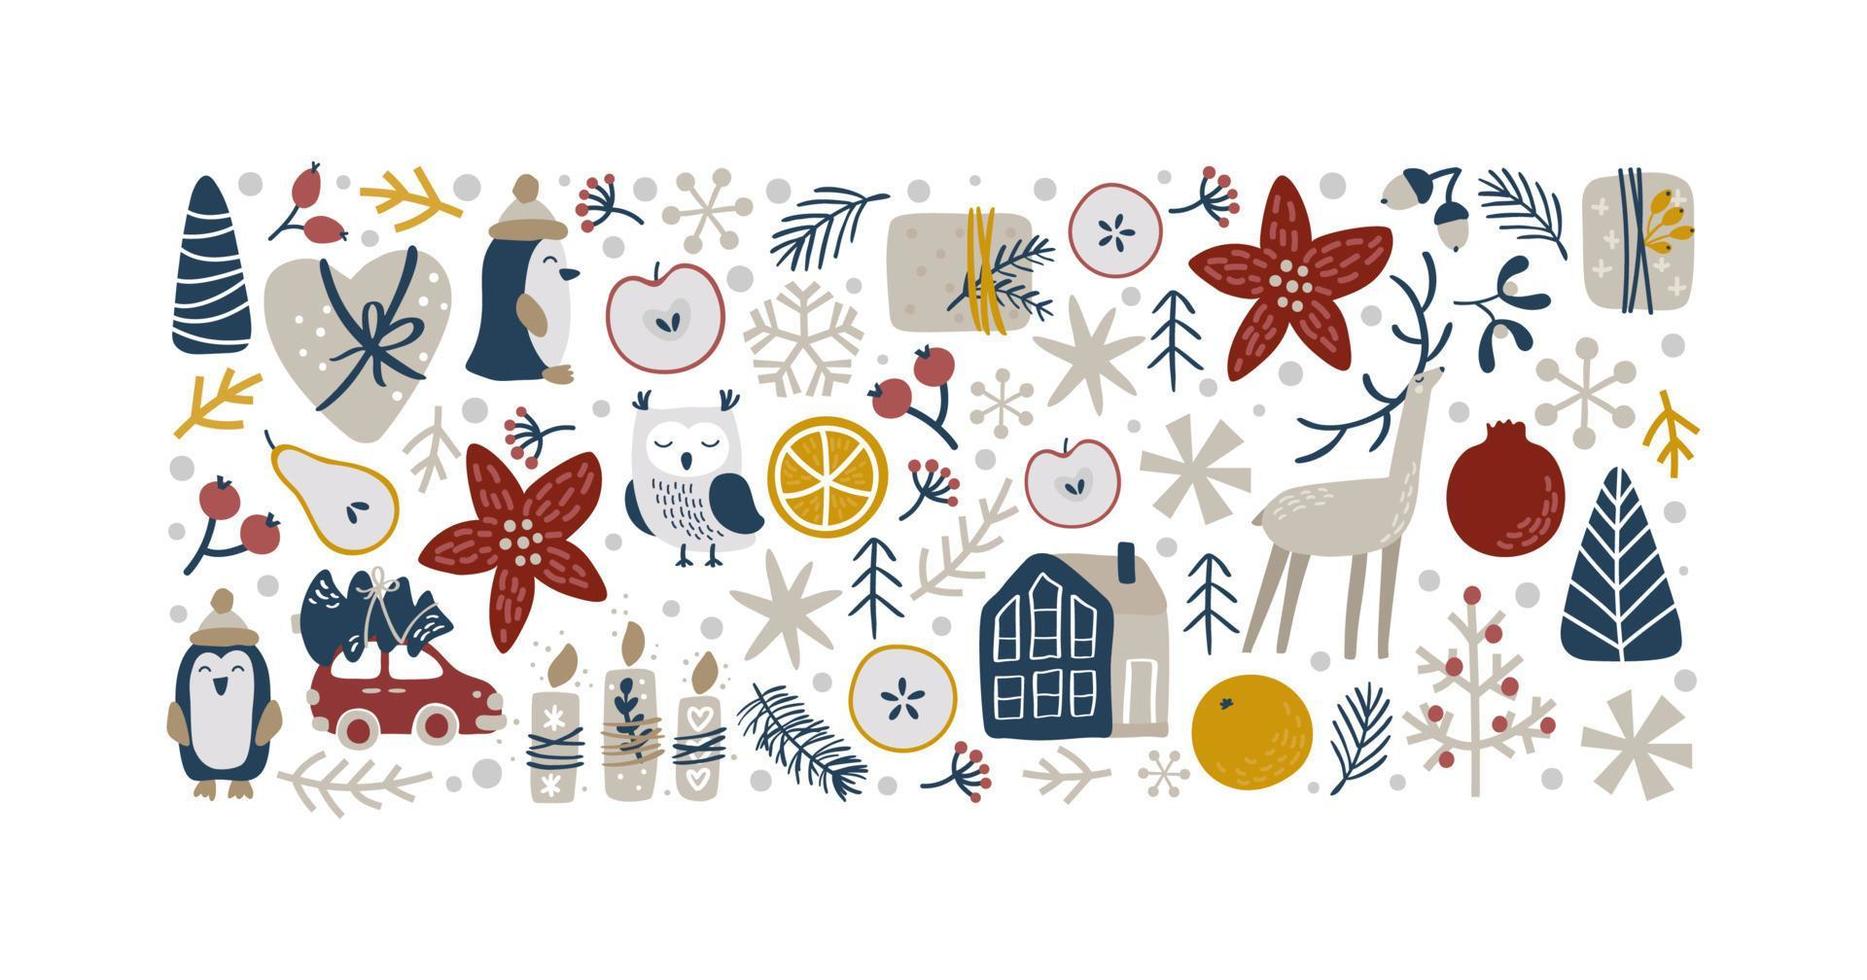 kerst vector hand getekende rechthoek vorm xmas doodle Scandinavische elementen huis, herten, sneeuwvlok, sinaasappel en andere. compositie voor wenskaart voor de wintervakantie